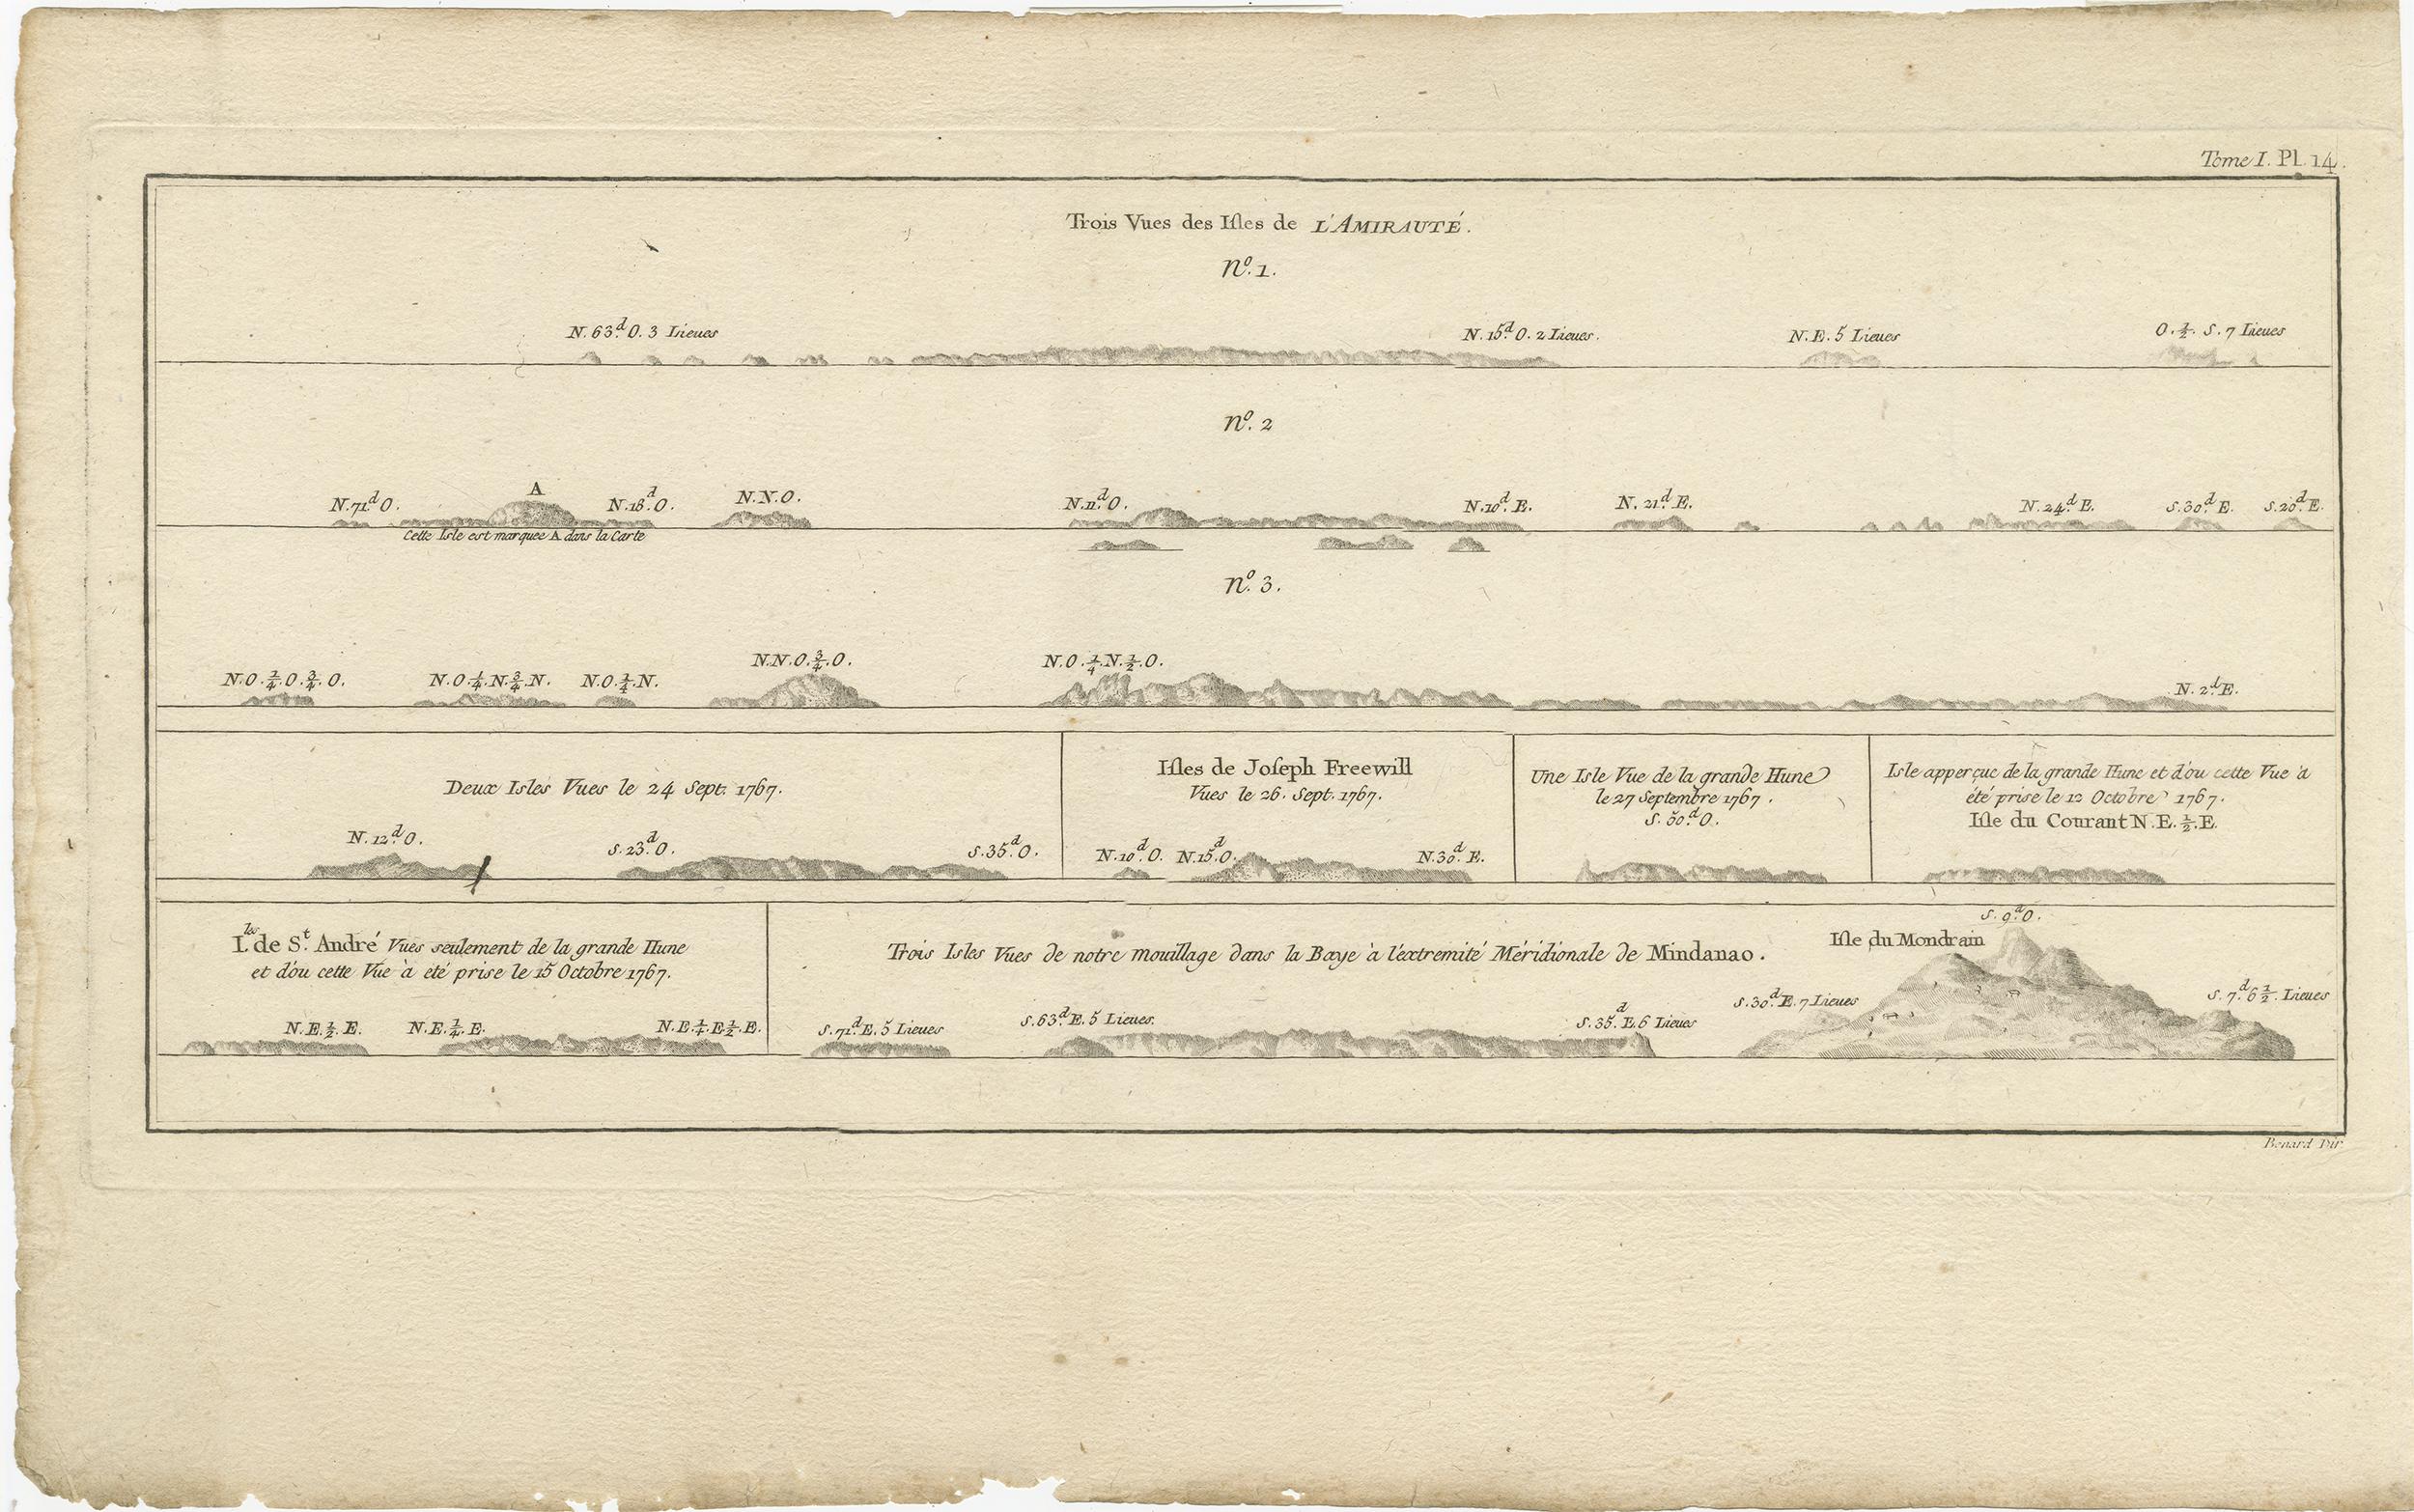 Antike Karte mit dem Titel 'Trois Vues des Isles de l'Amirauté'. Mehrere Küstenansichten der Admiralitätsinseln, Bismarck-Archipel, nördlich von Neuguinea im Südpazifik.

Veröffentlicht in einer Ausgabe von John Hawkesworths Atlas, der eine